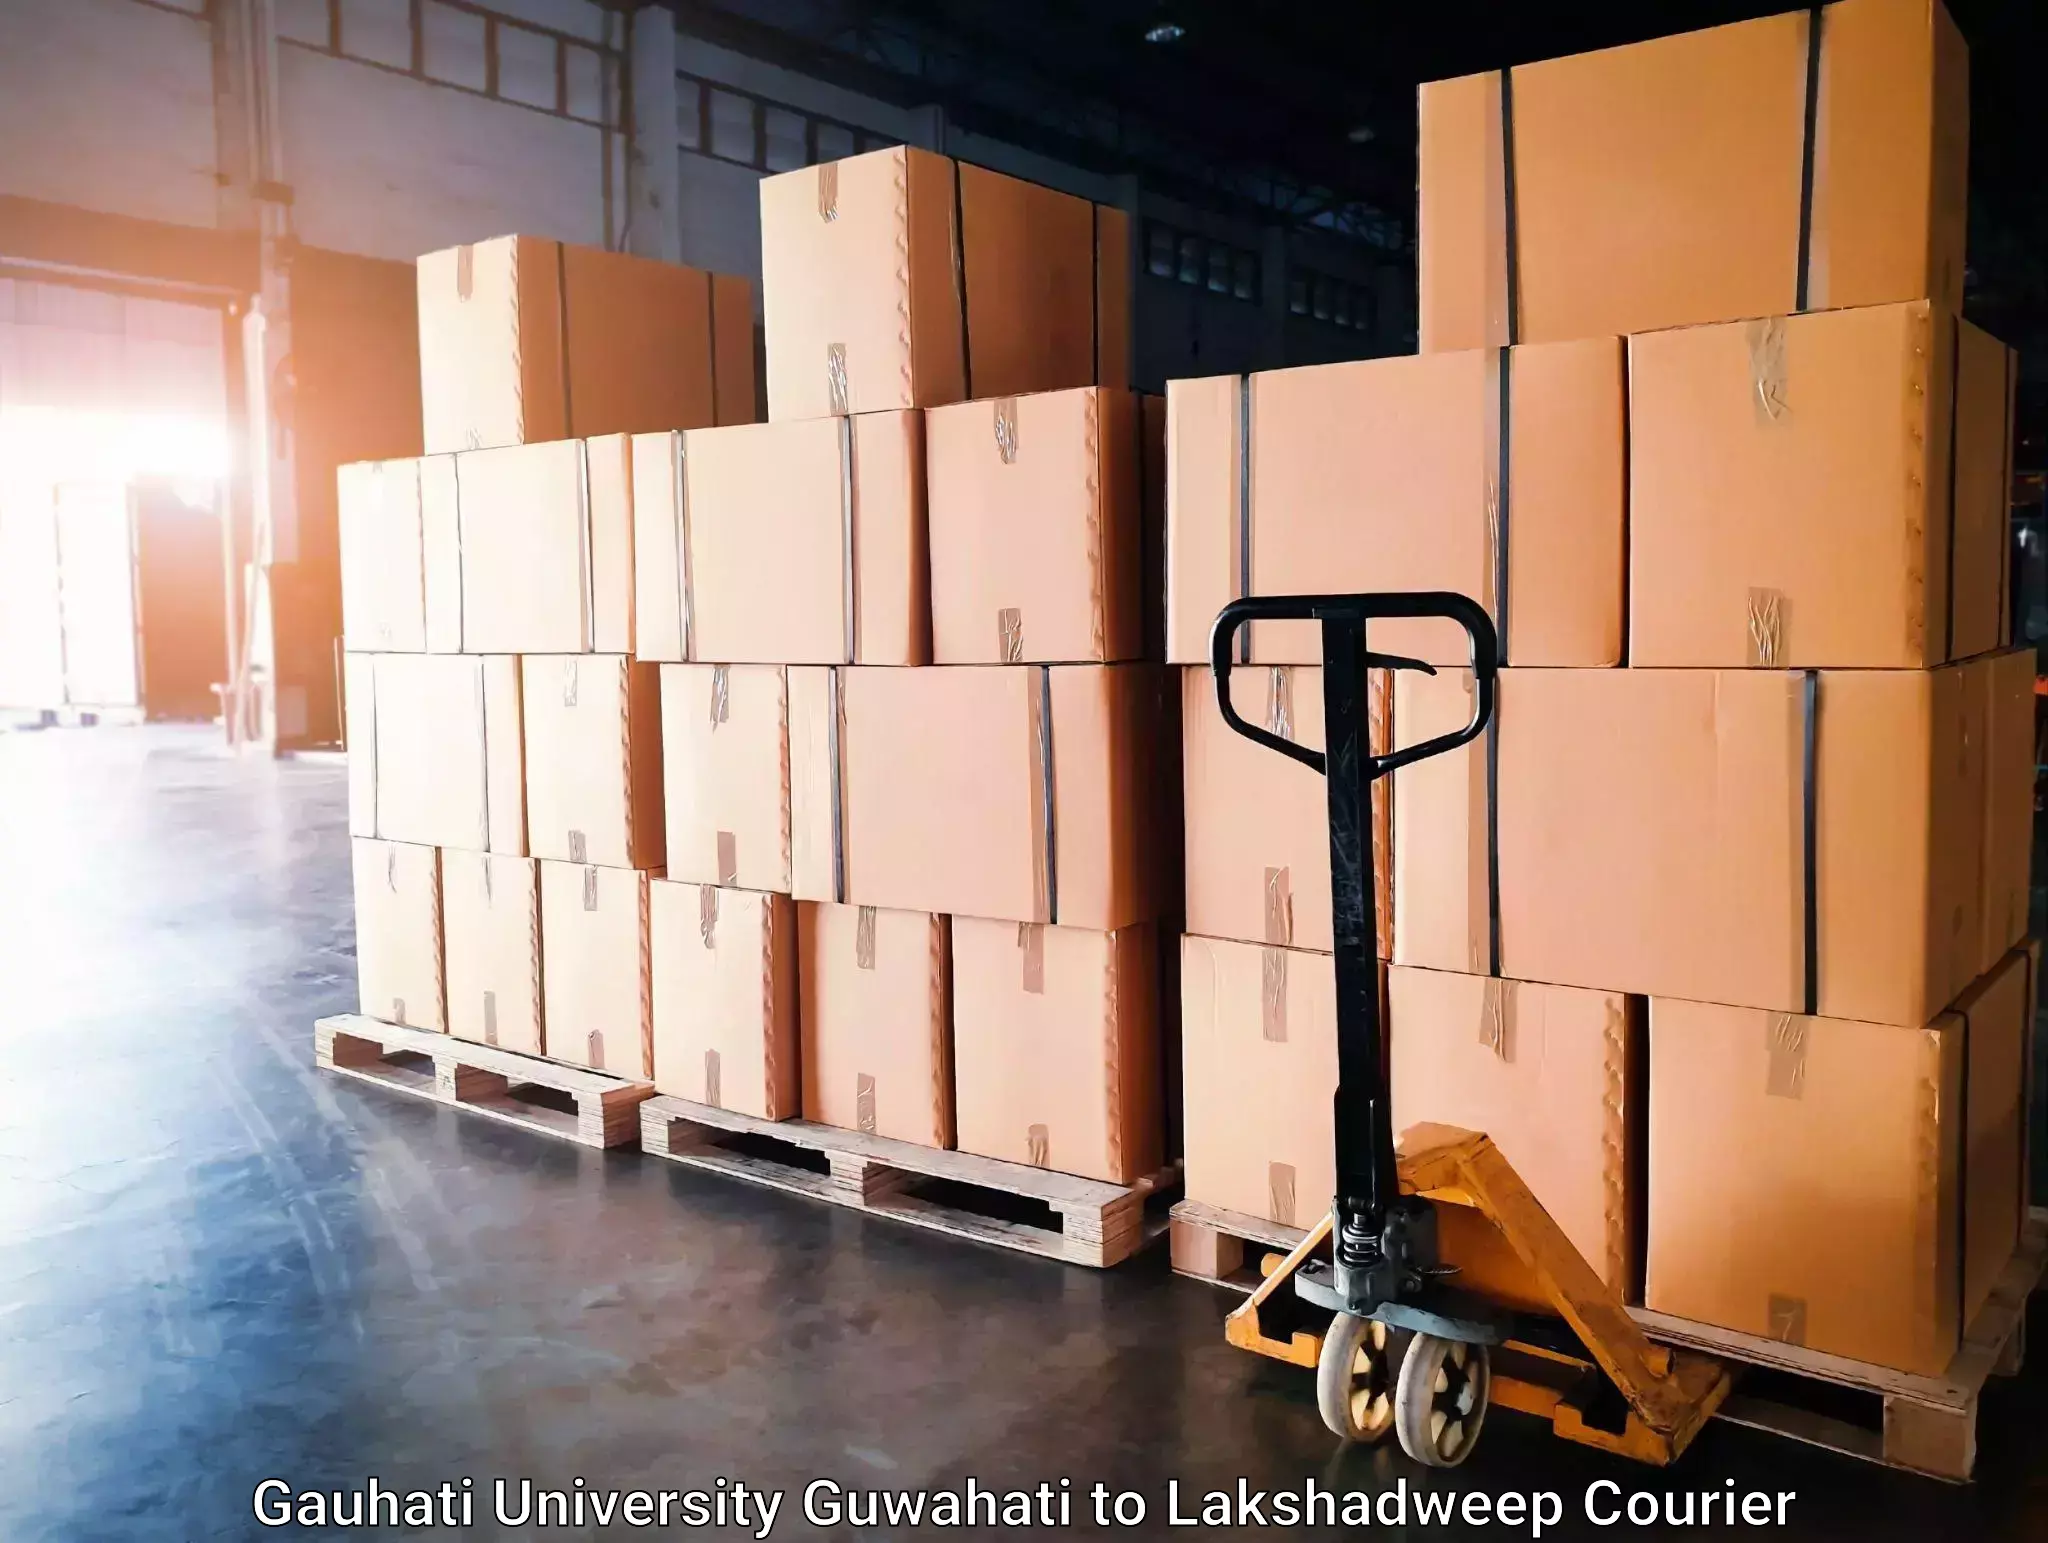 High-speed parcel service Gauhati University Guwahati to Lakshadweep